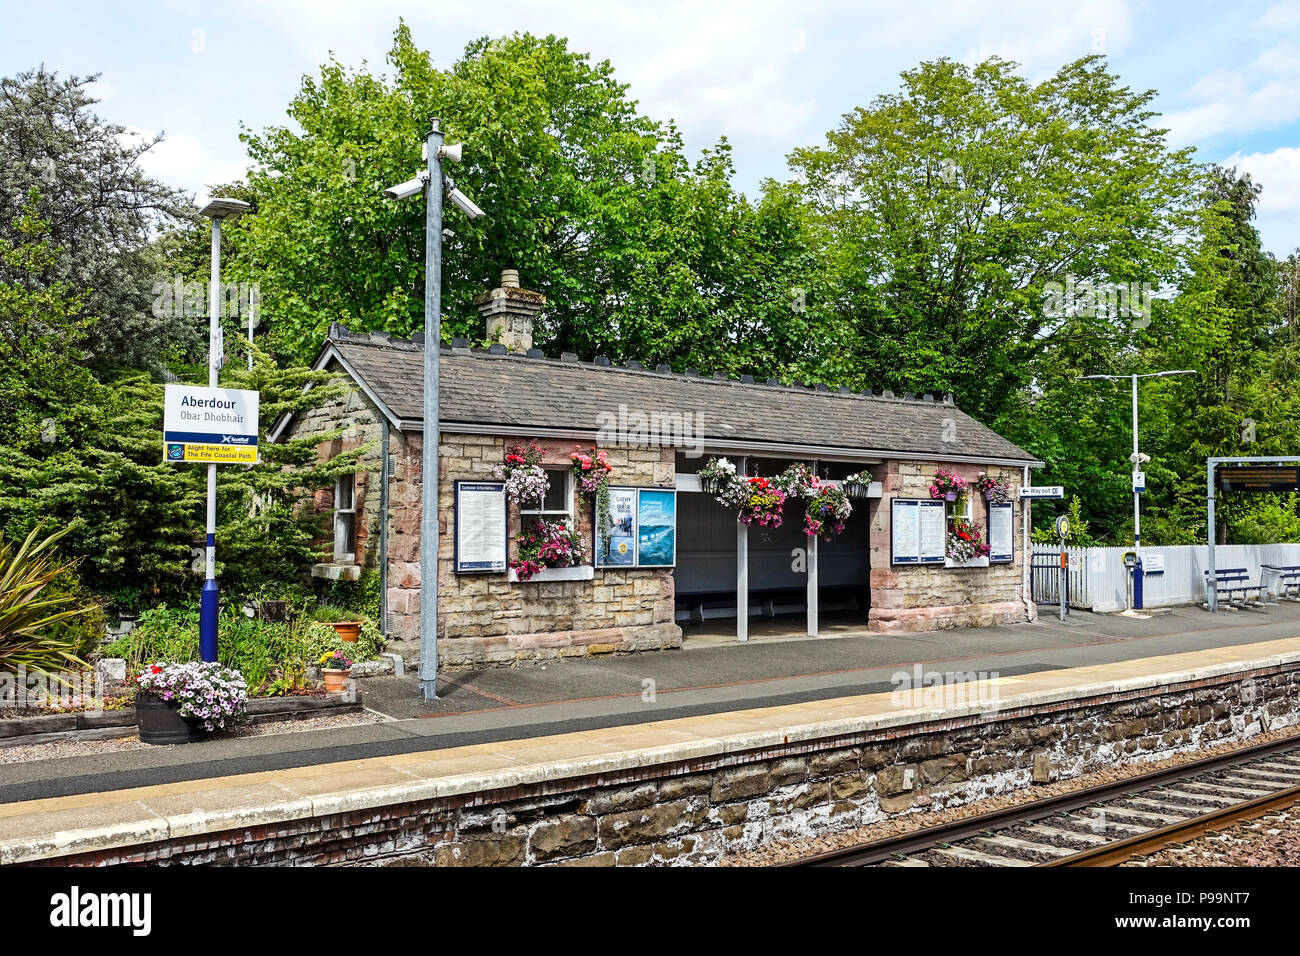 Aberdour railway station in Aberdour Fife Scotland UK Stock Photo